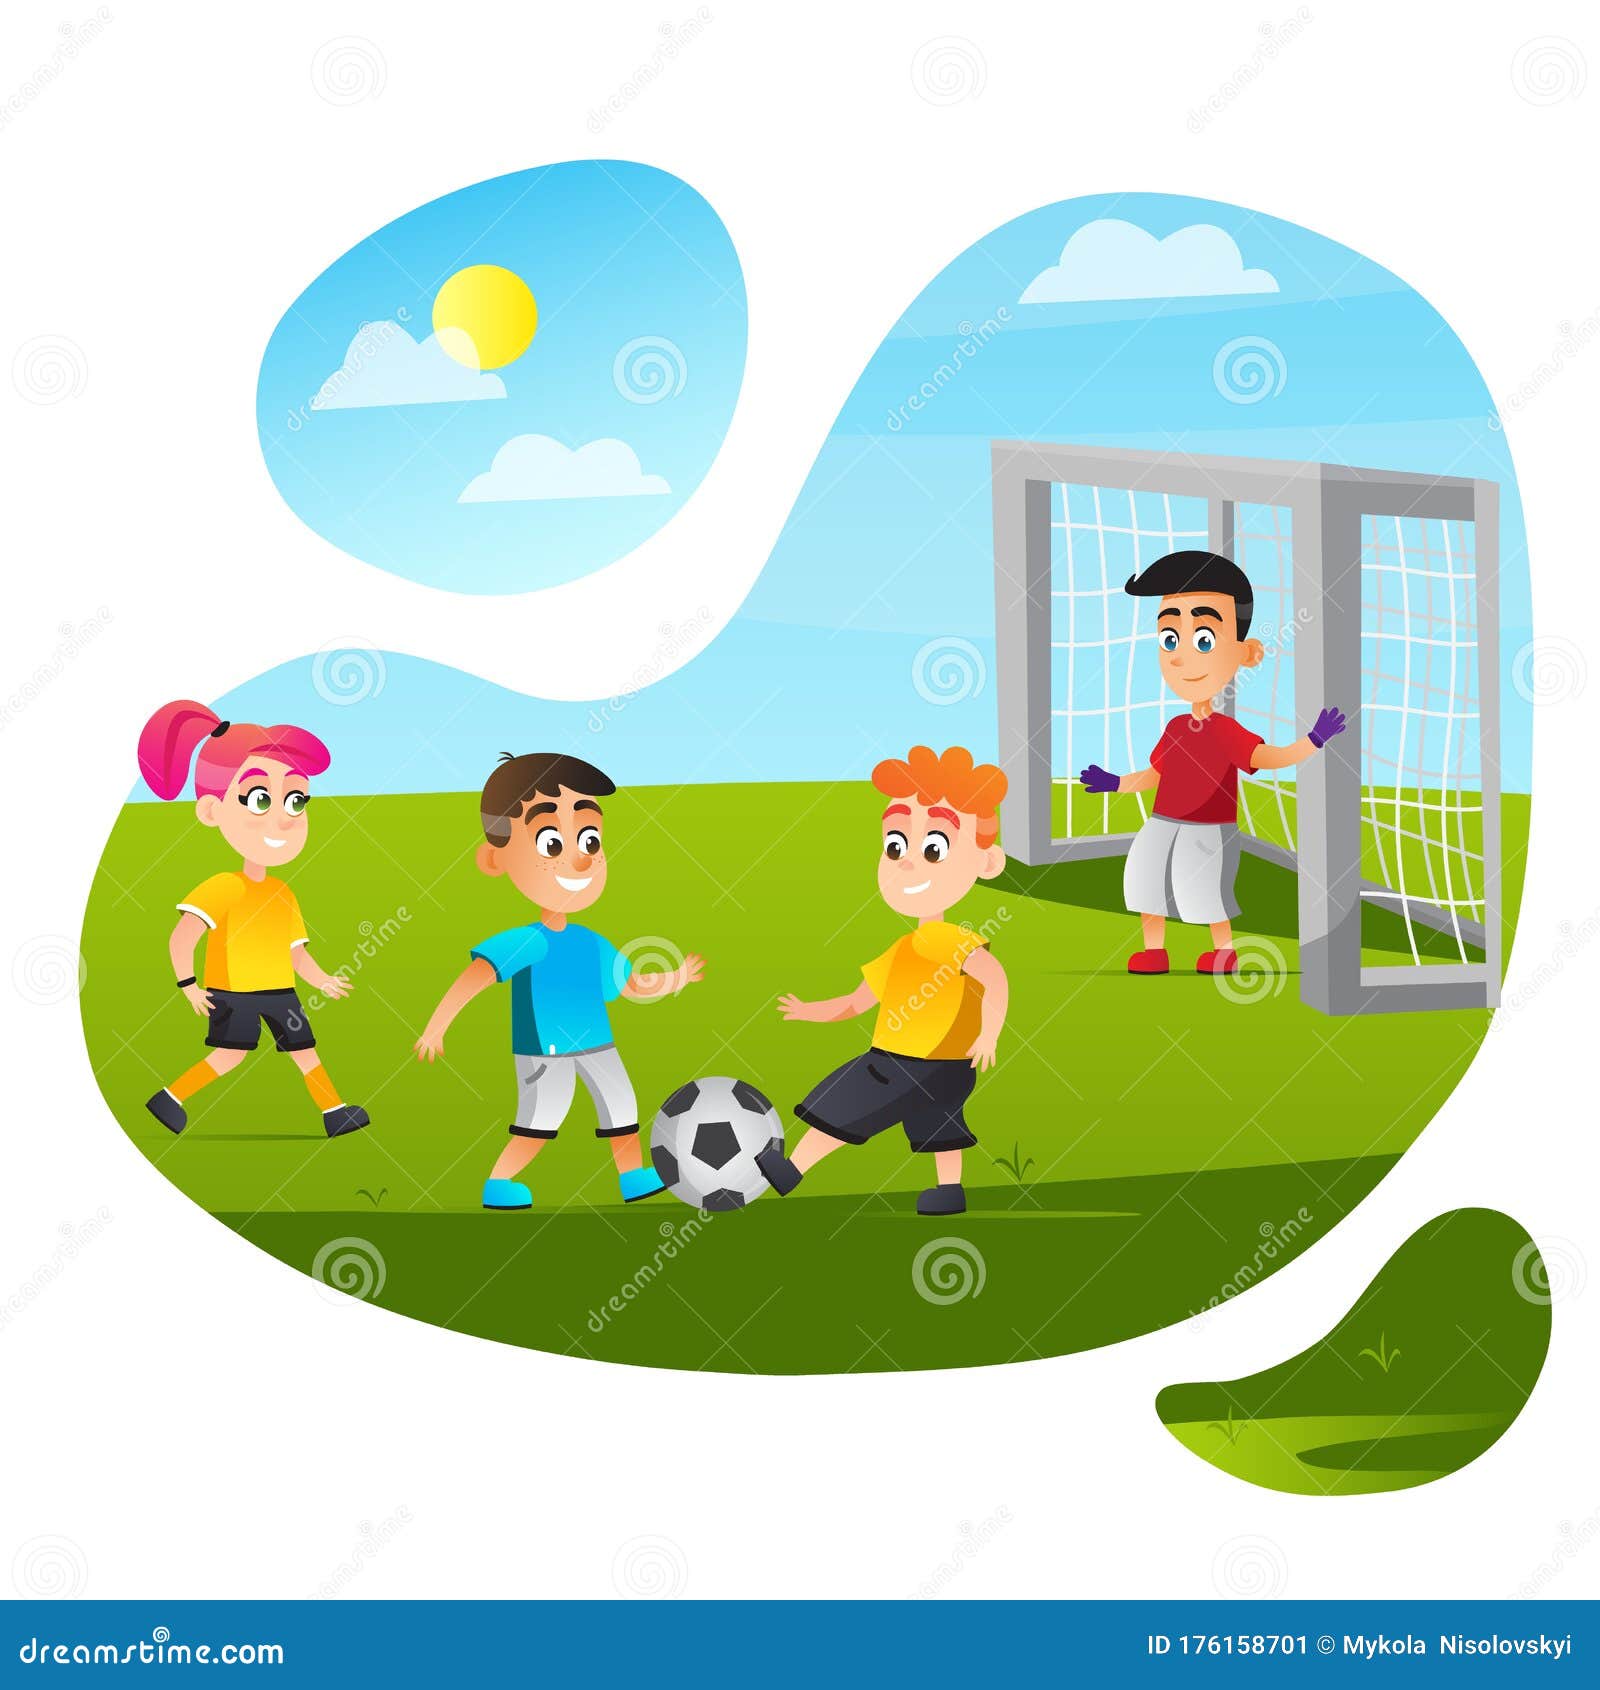 Desenho de Jogar futebol pintado e colorido por Imshampoo o dia 14